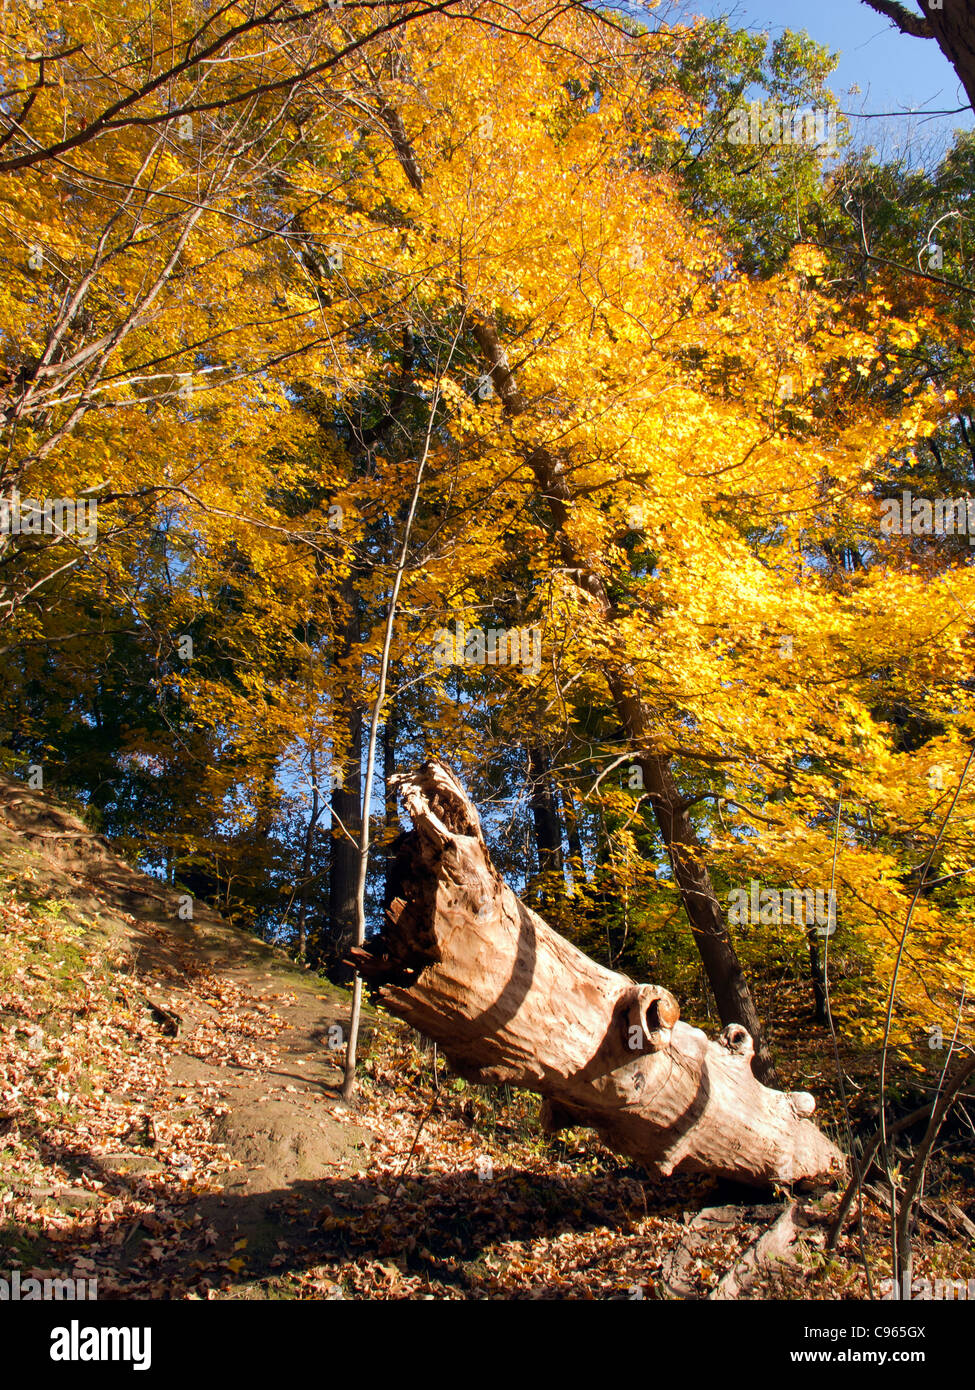 Fallen tree in Autumn. Stock Photo